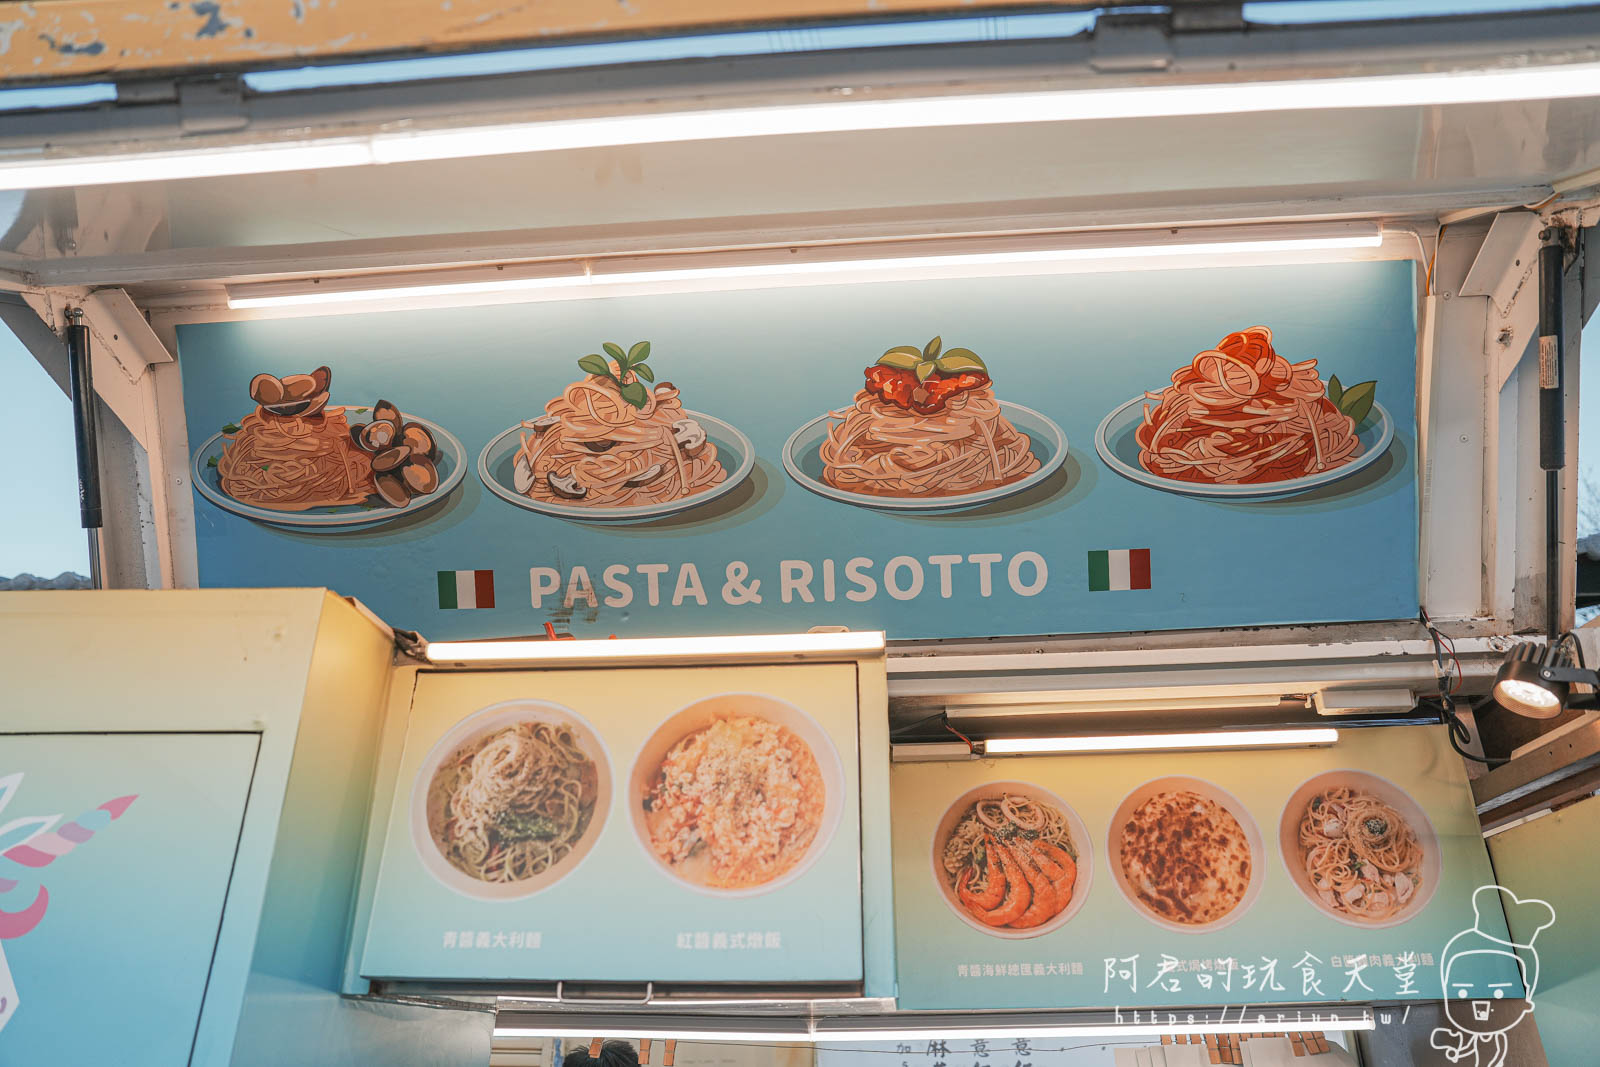 【環島行動餐車】與你見麵 Pasta 現點現做、平價美味的義式料理(菜單)